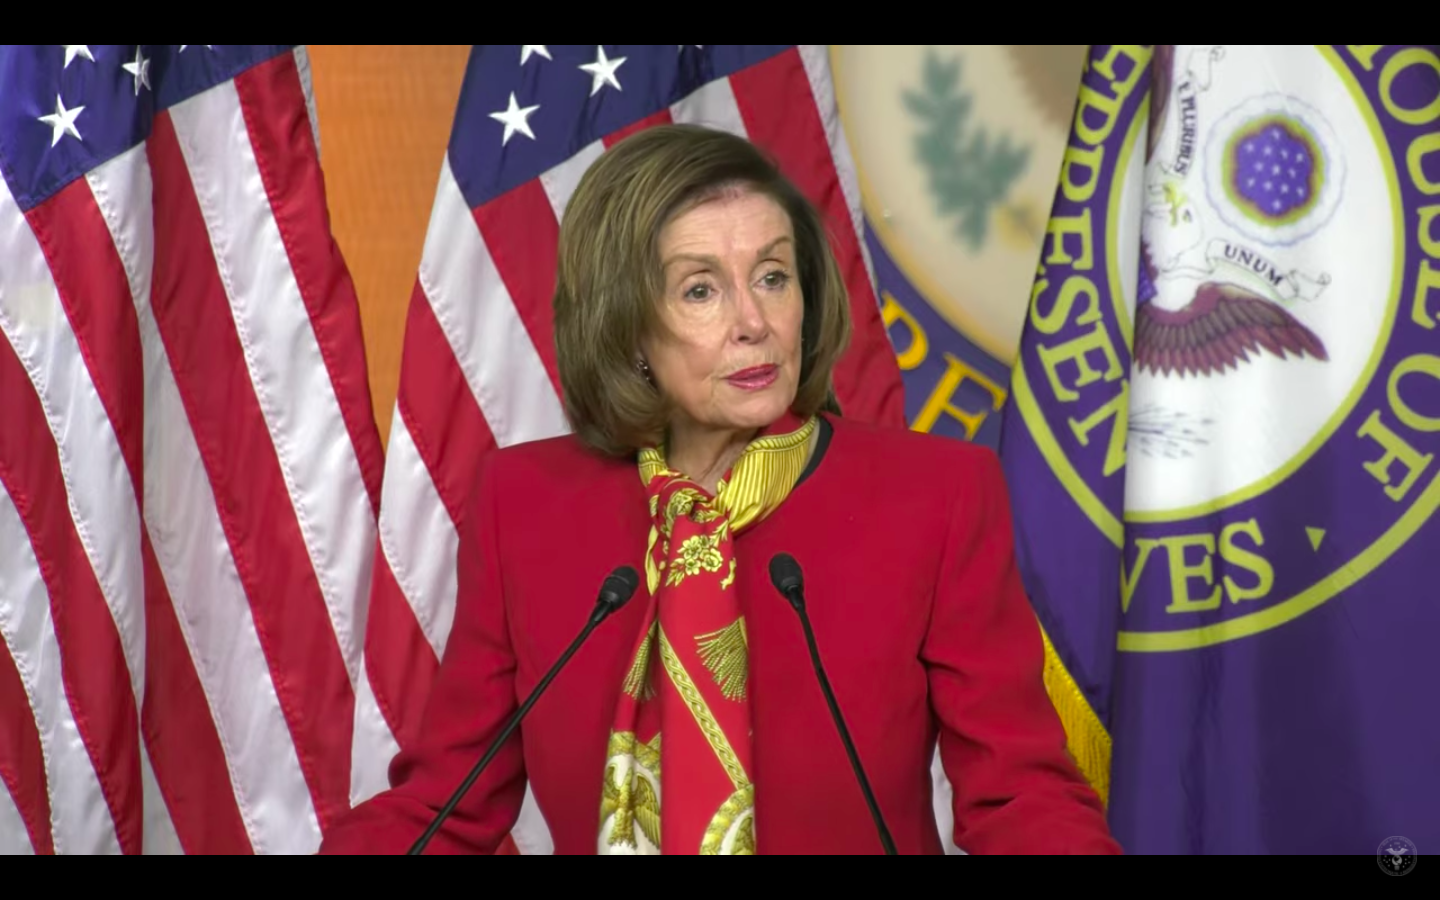 US: Nancy Pelosi reelected speaker of House